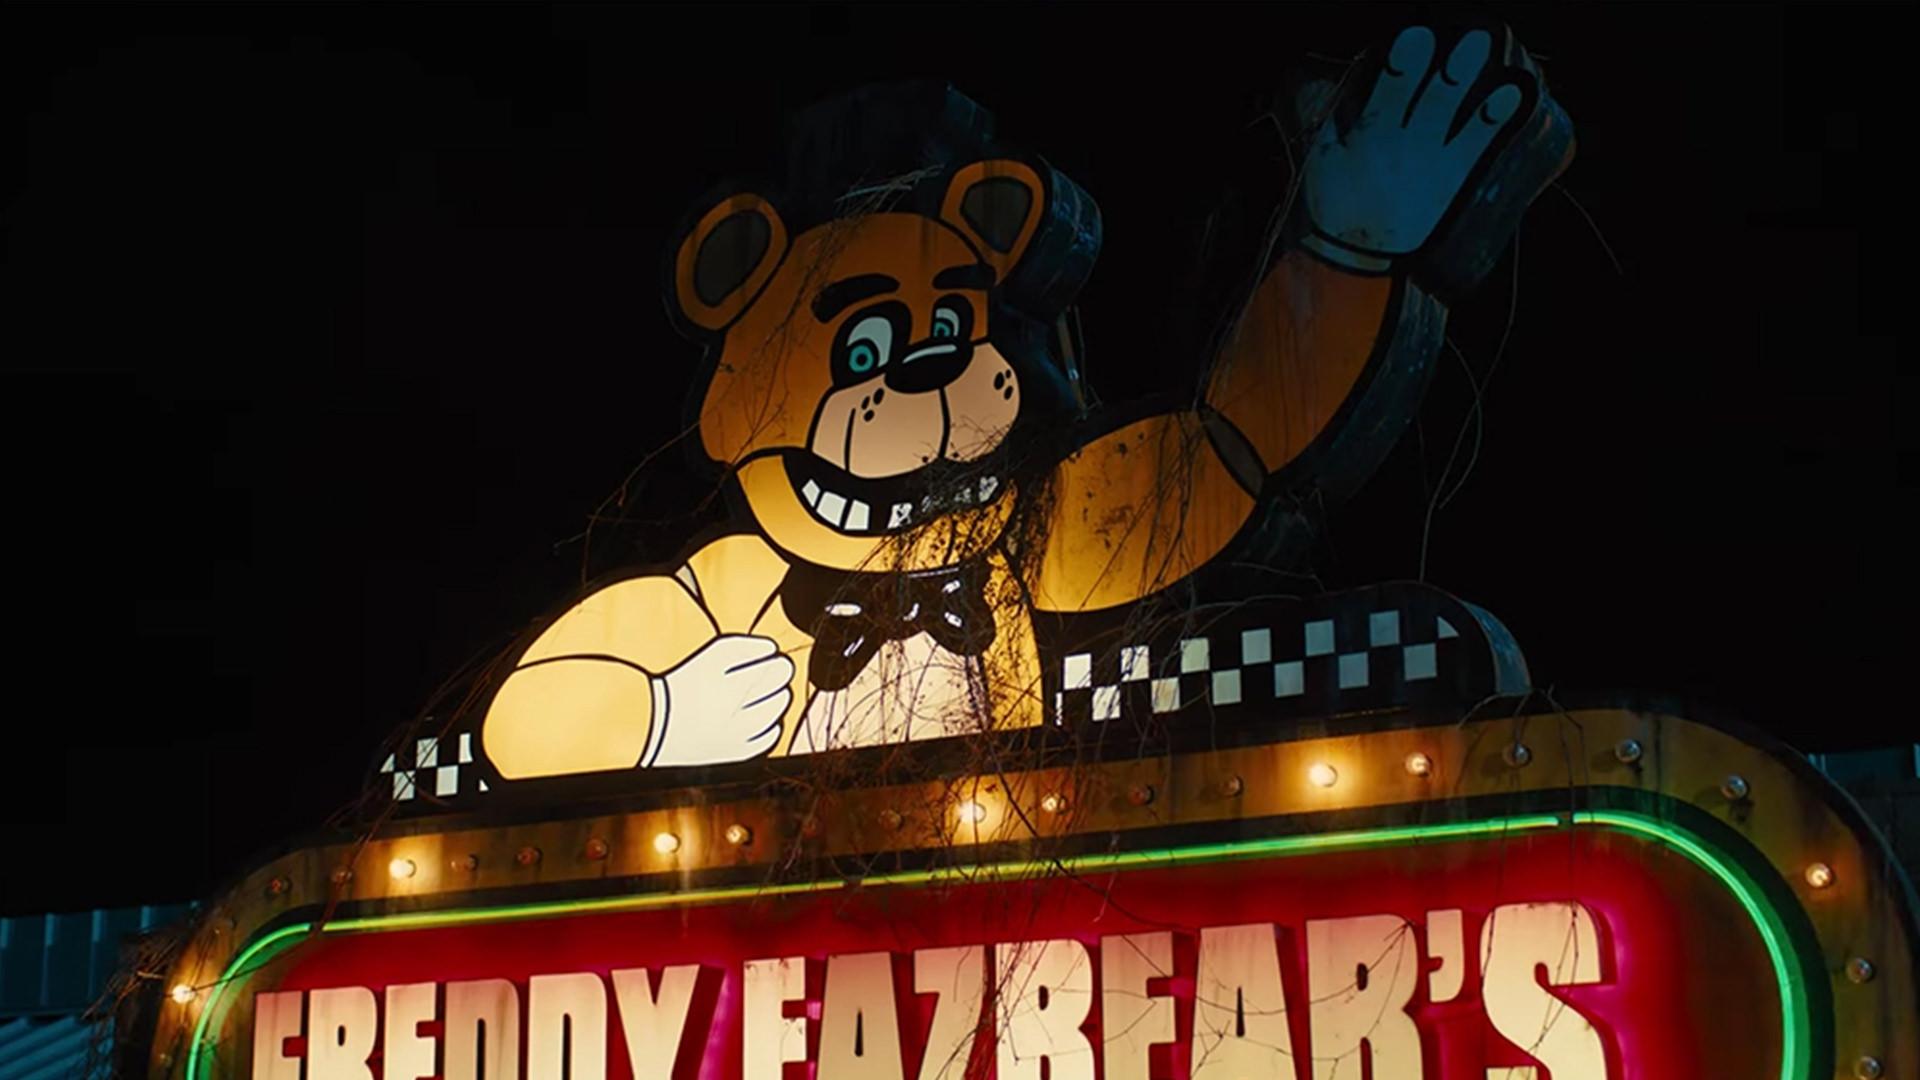 شروع تهدیدهای فردی در شب در پوستر فیلم ترسناک Five Nights at Freddy’s